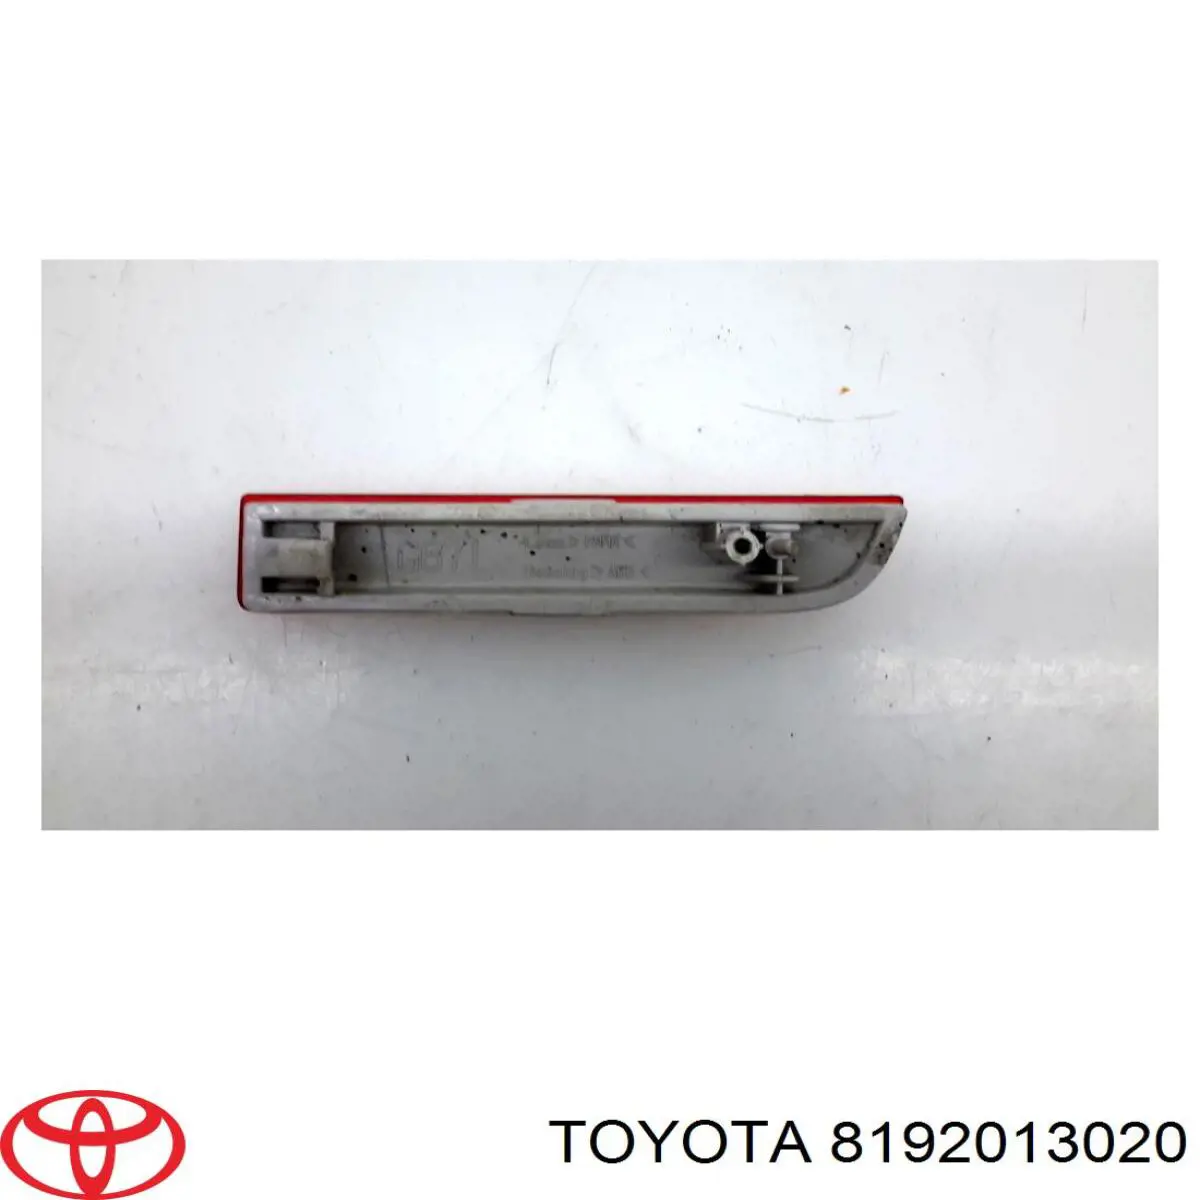 Retrorrefletor (refletor) do pára-choque traseiro esquerdo para Toyota RAV4 (A3)